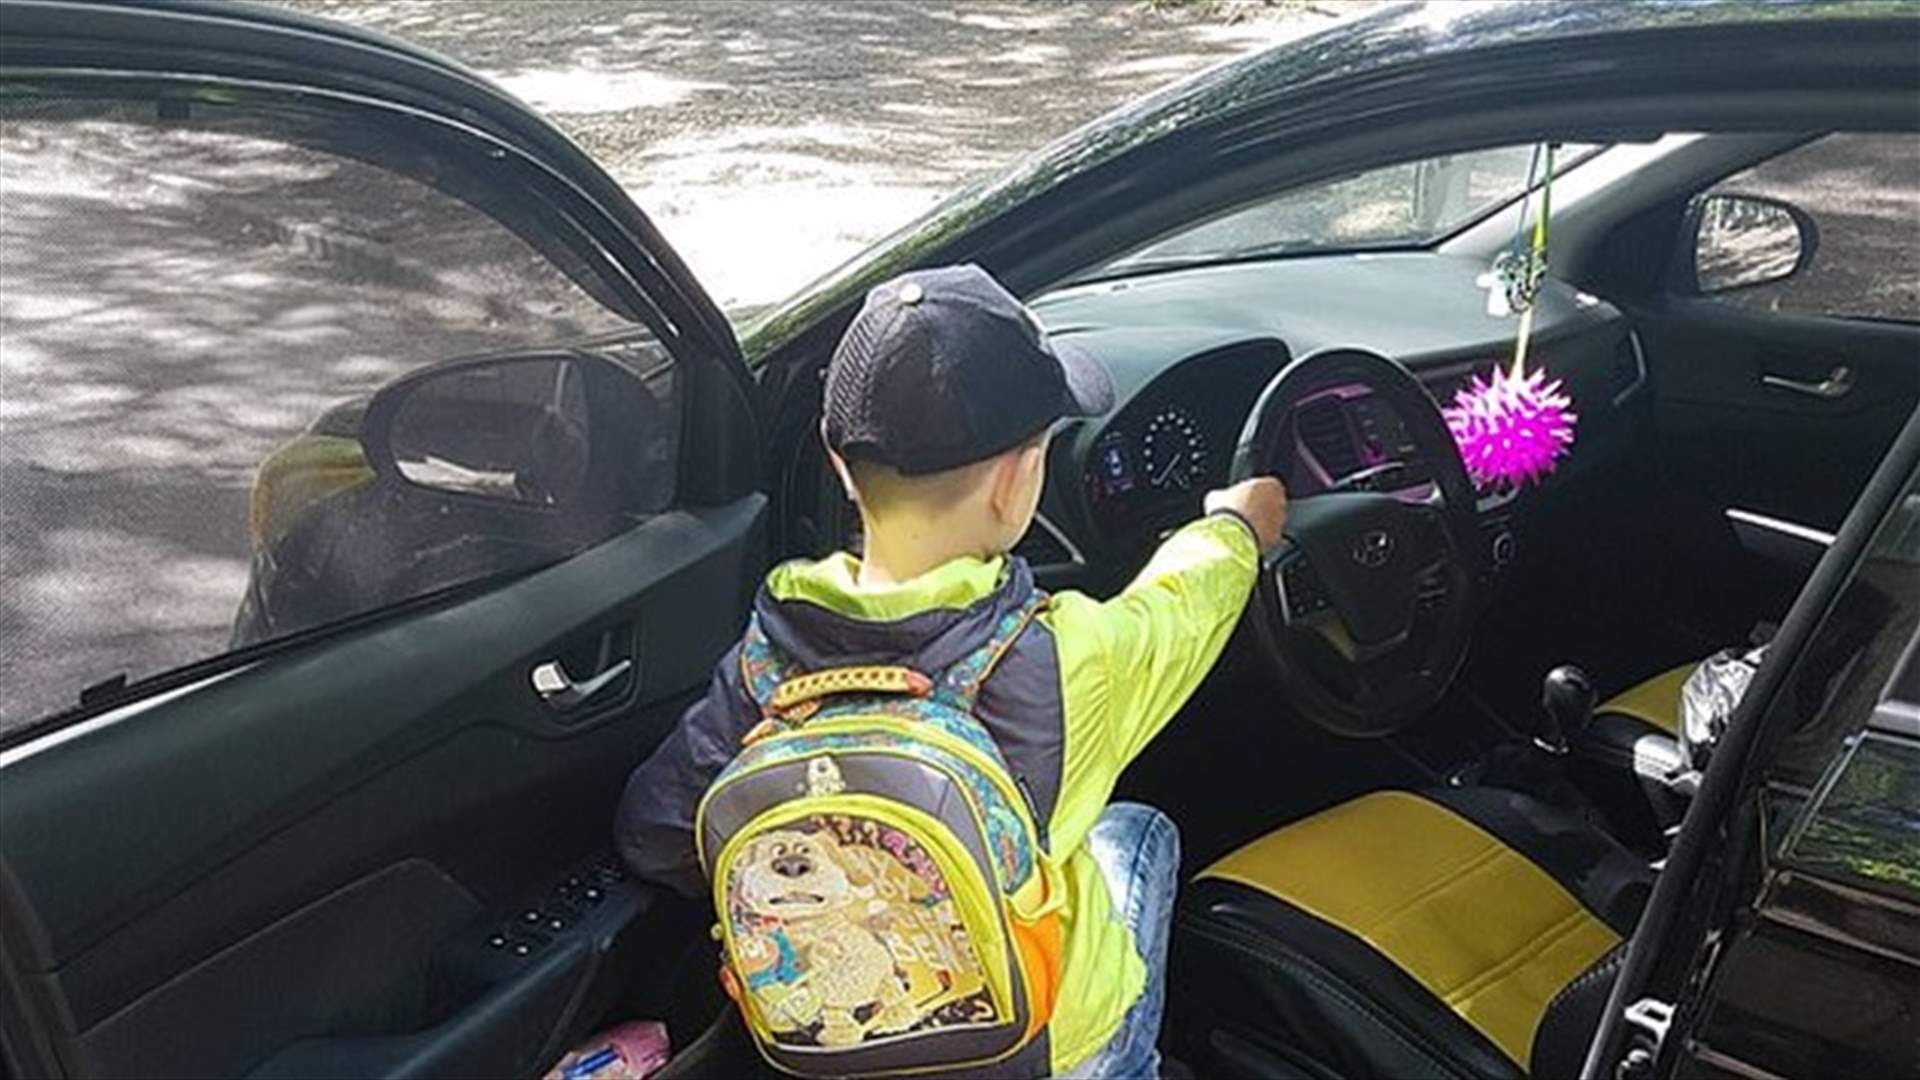 سيدة تسلّم مقود السيارة لطفلها على الطريق السريع... وإنتقادات كثيرة تطالها(فيديو)